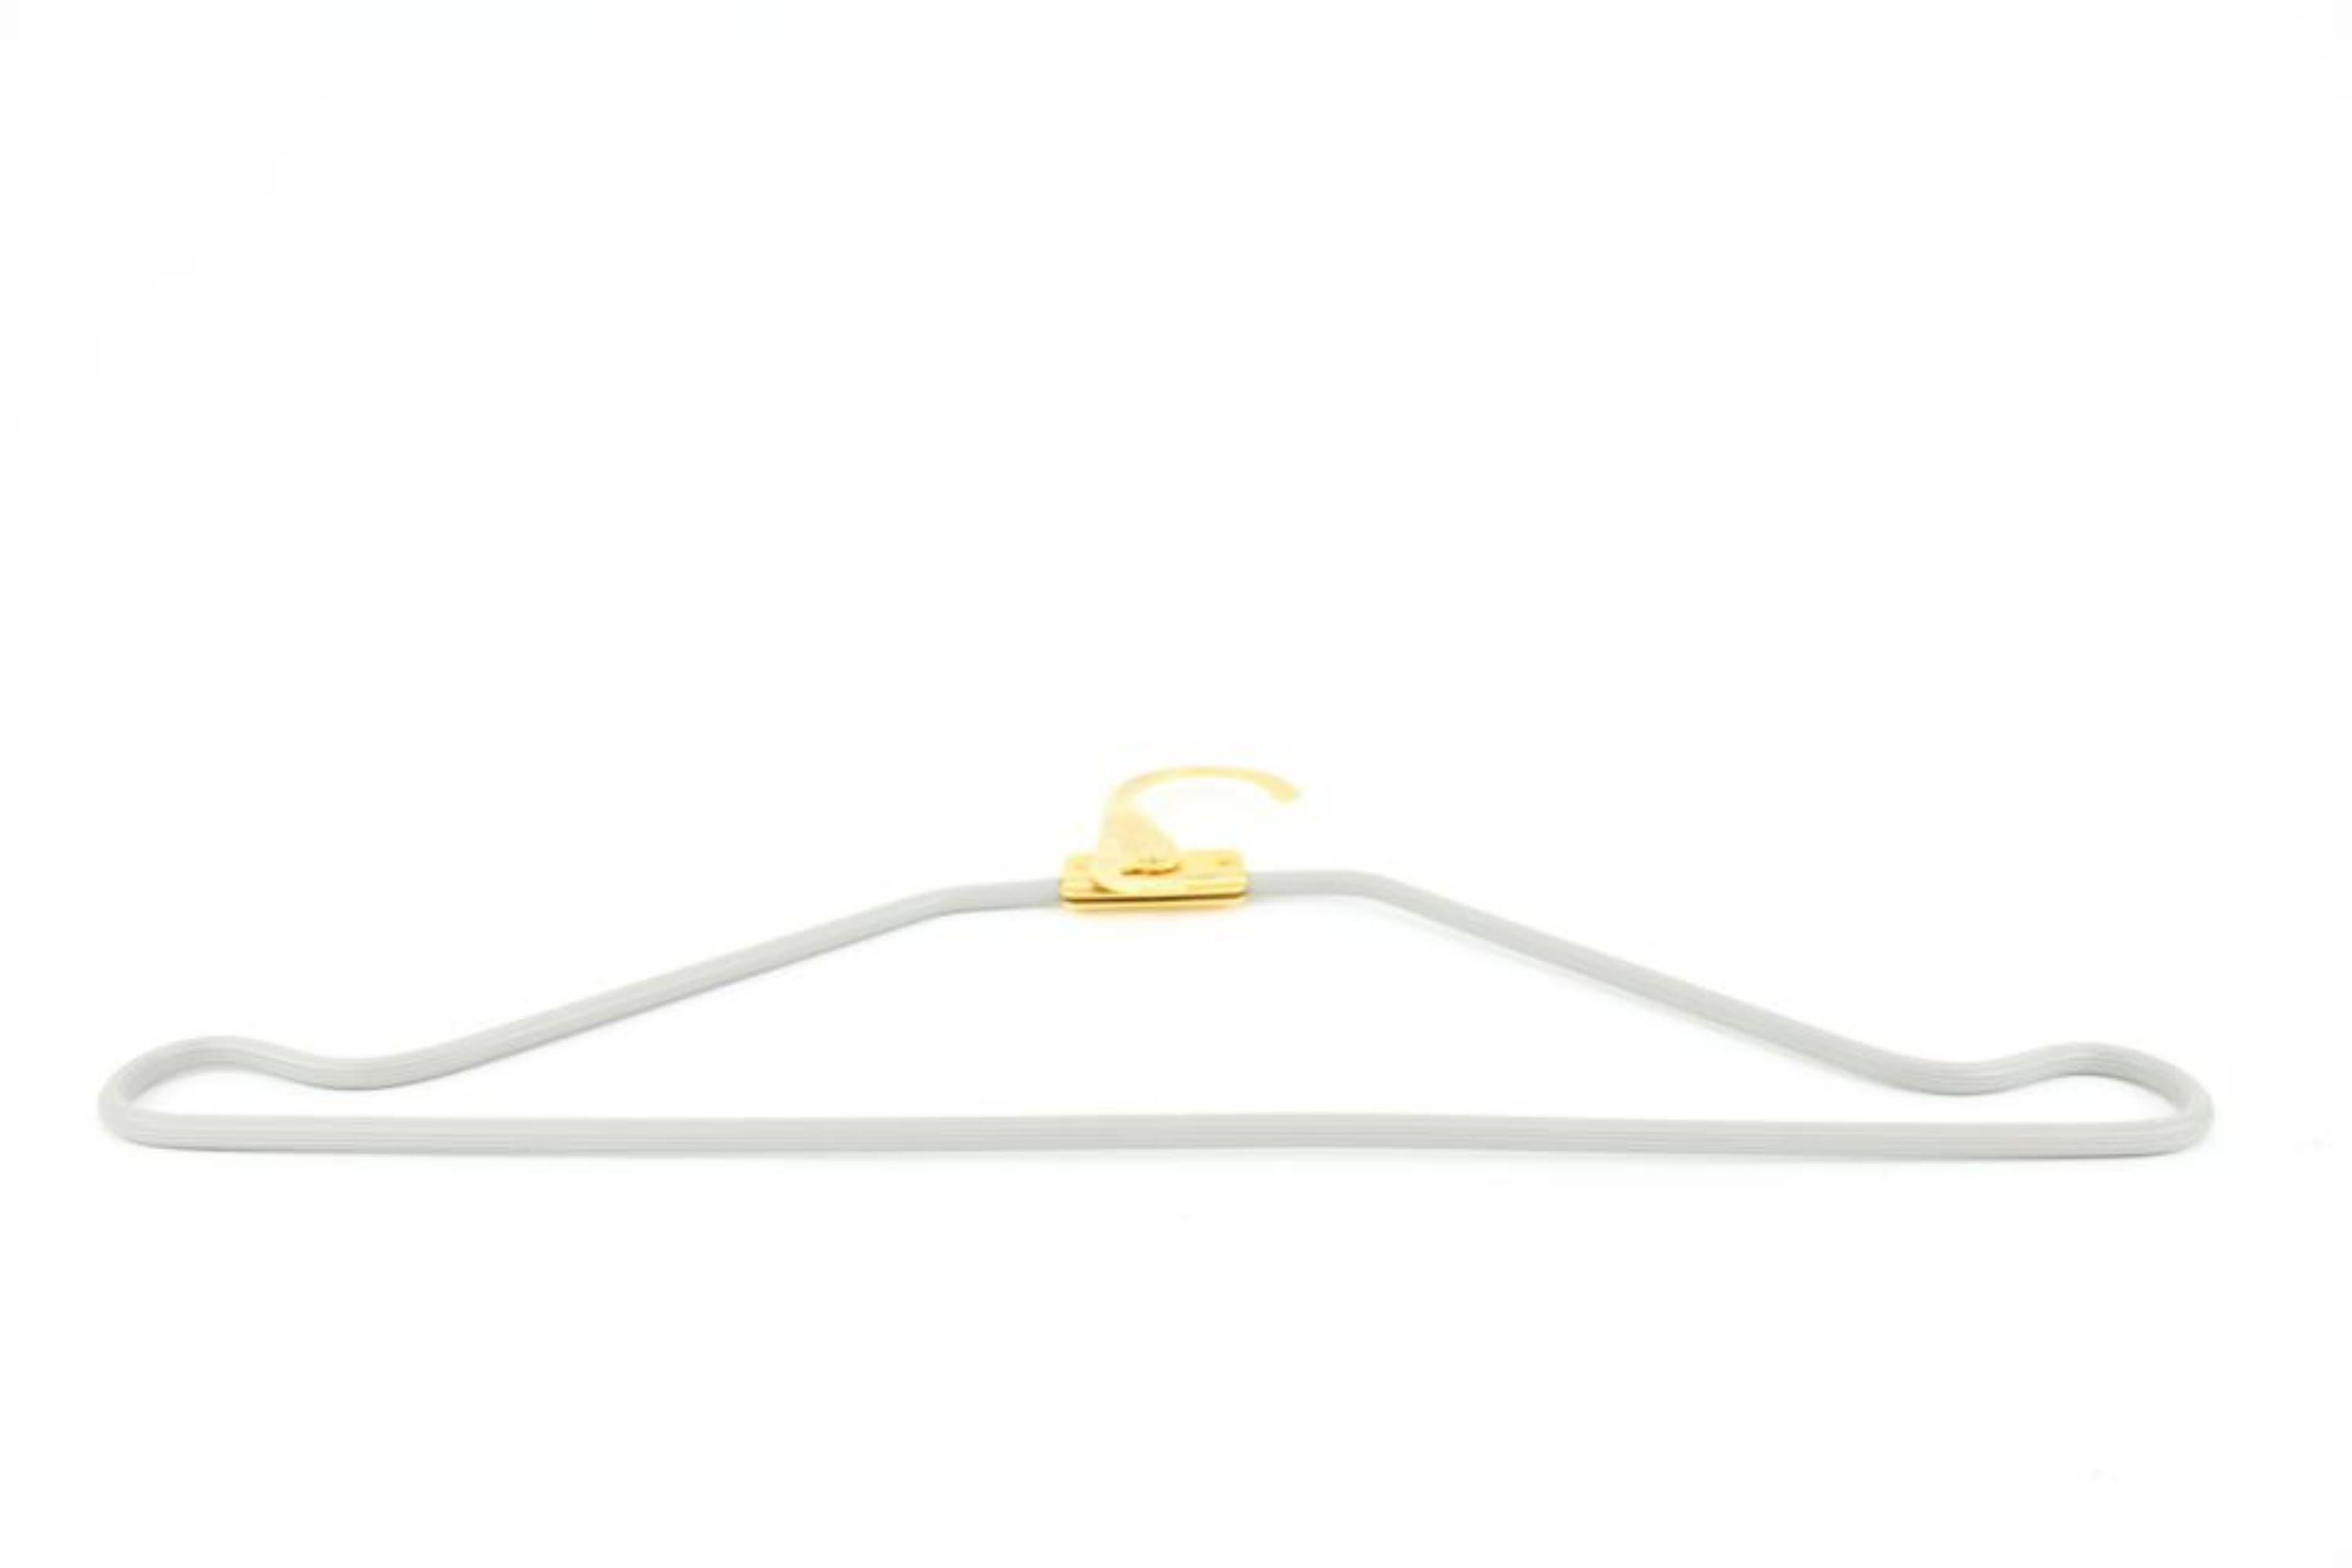 Louis Vuitton Gold x Grey Retractable Hanger 14lv323s
Measurements: Length:  16.2